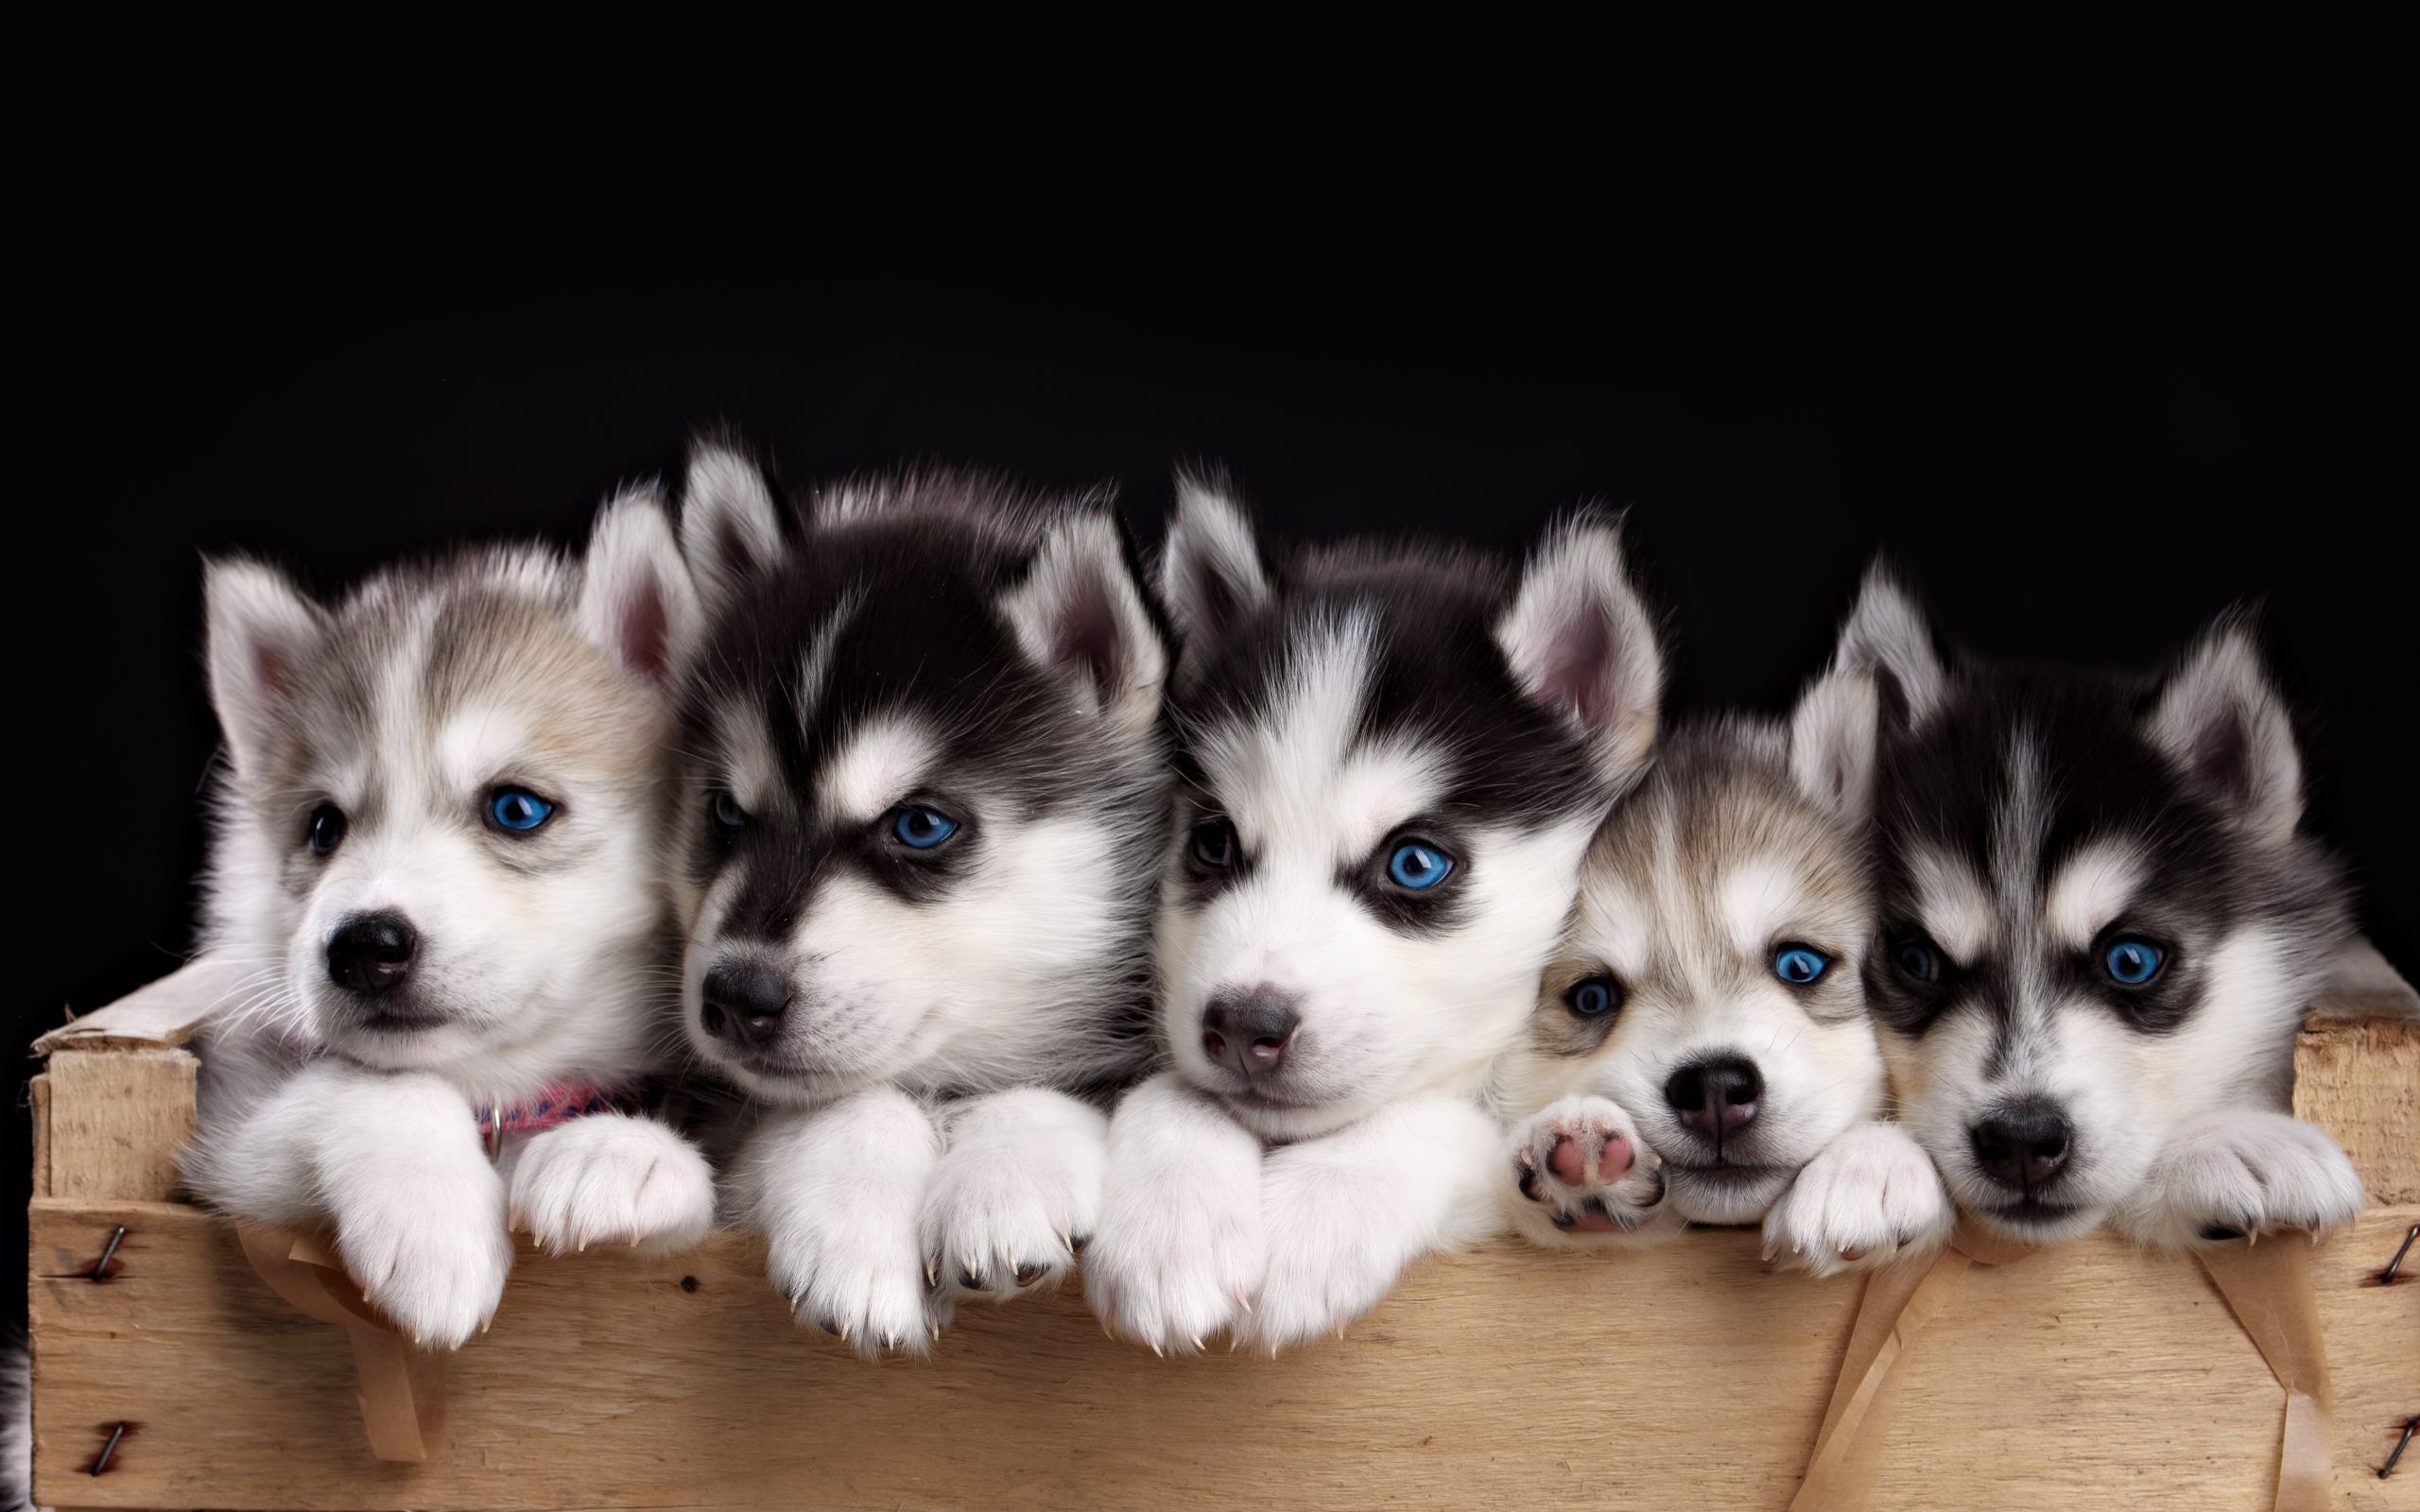 puppies wallpaper for desktop